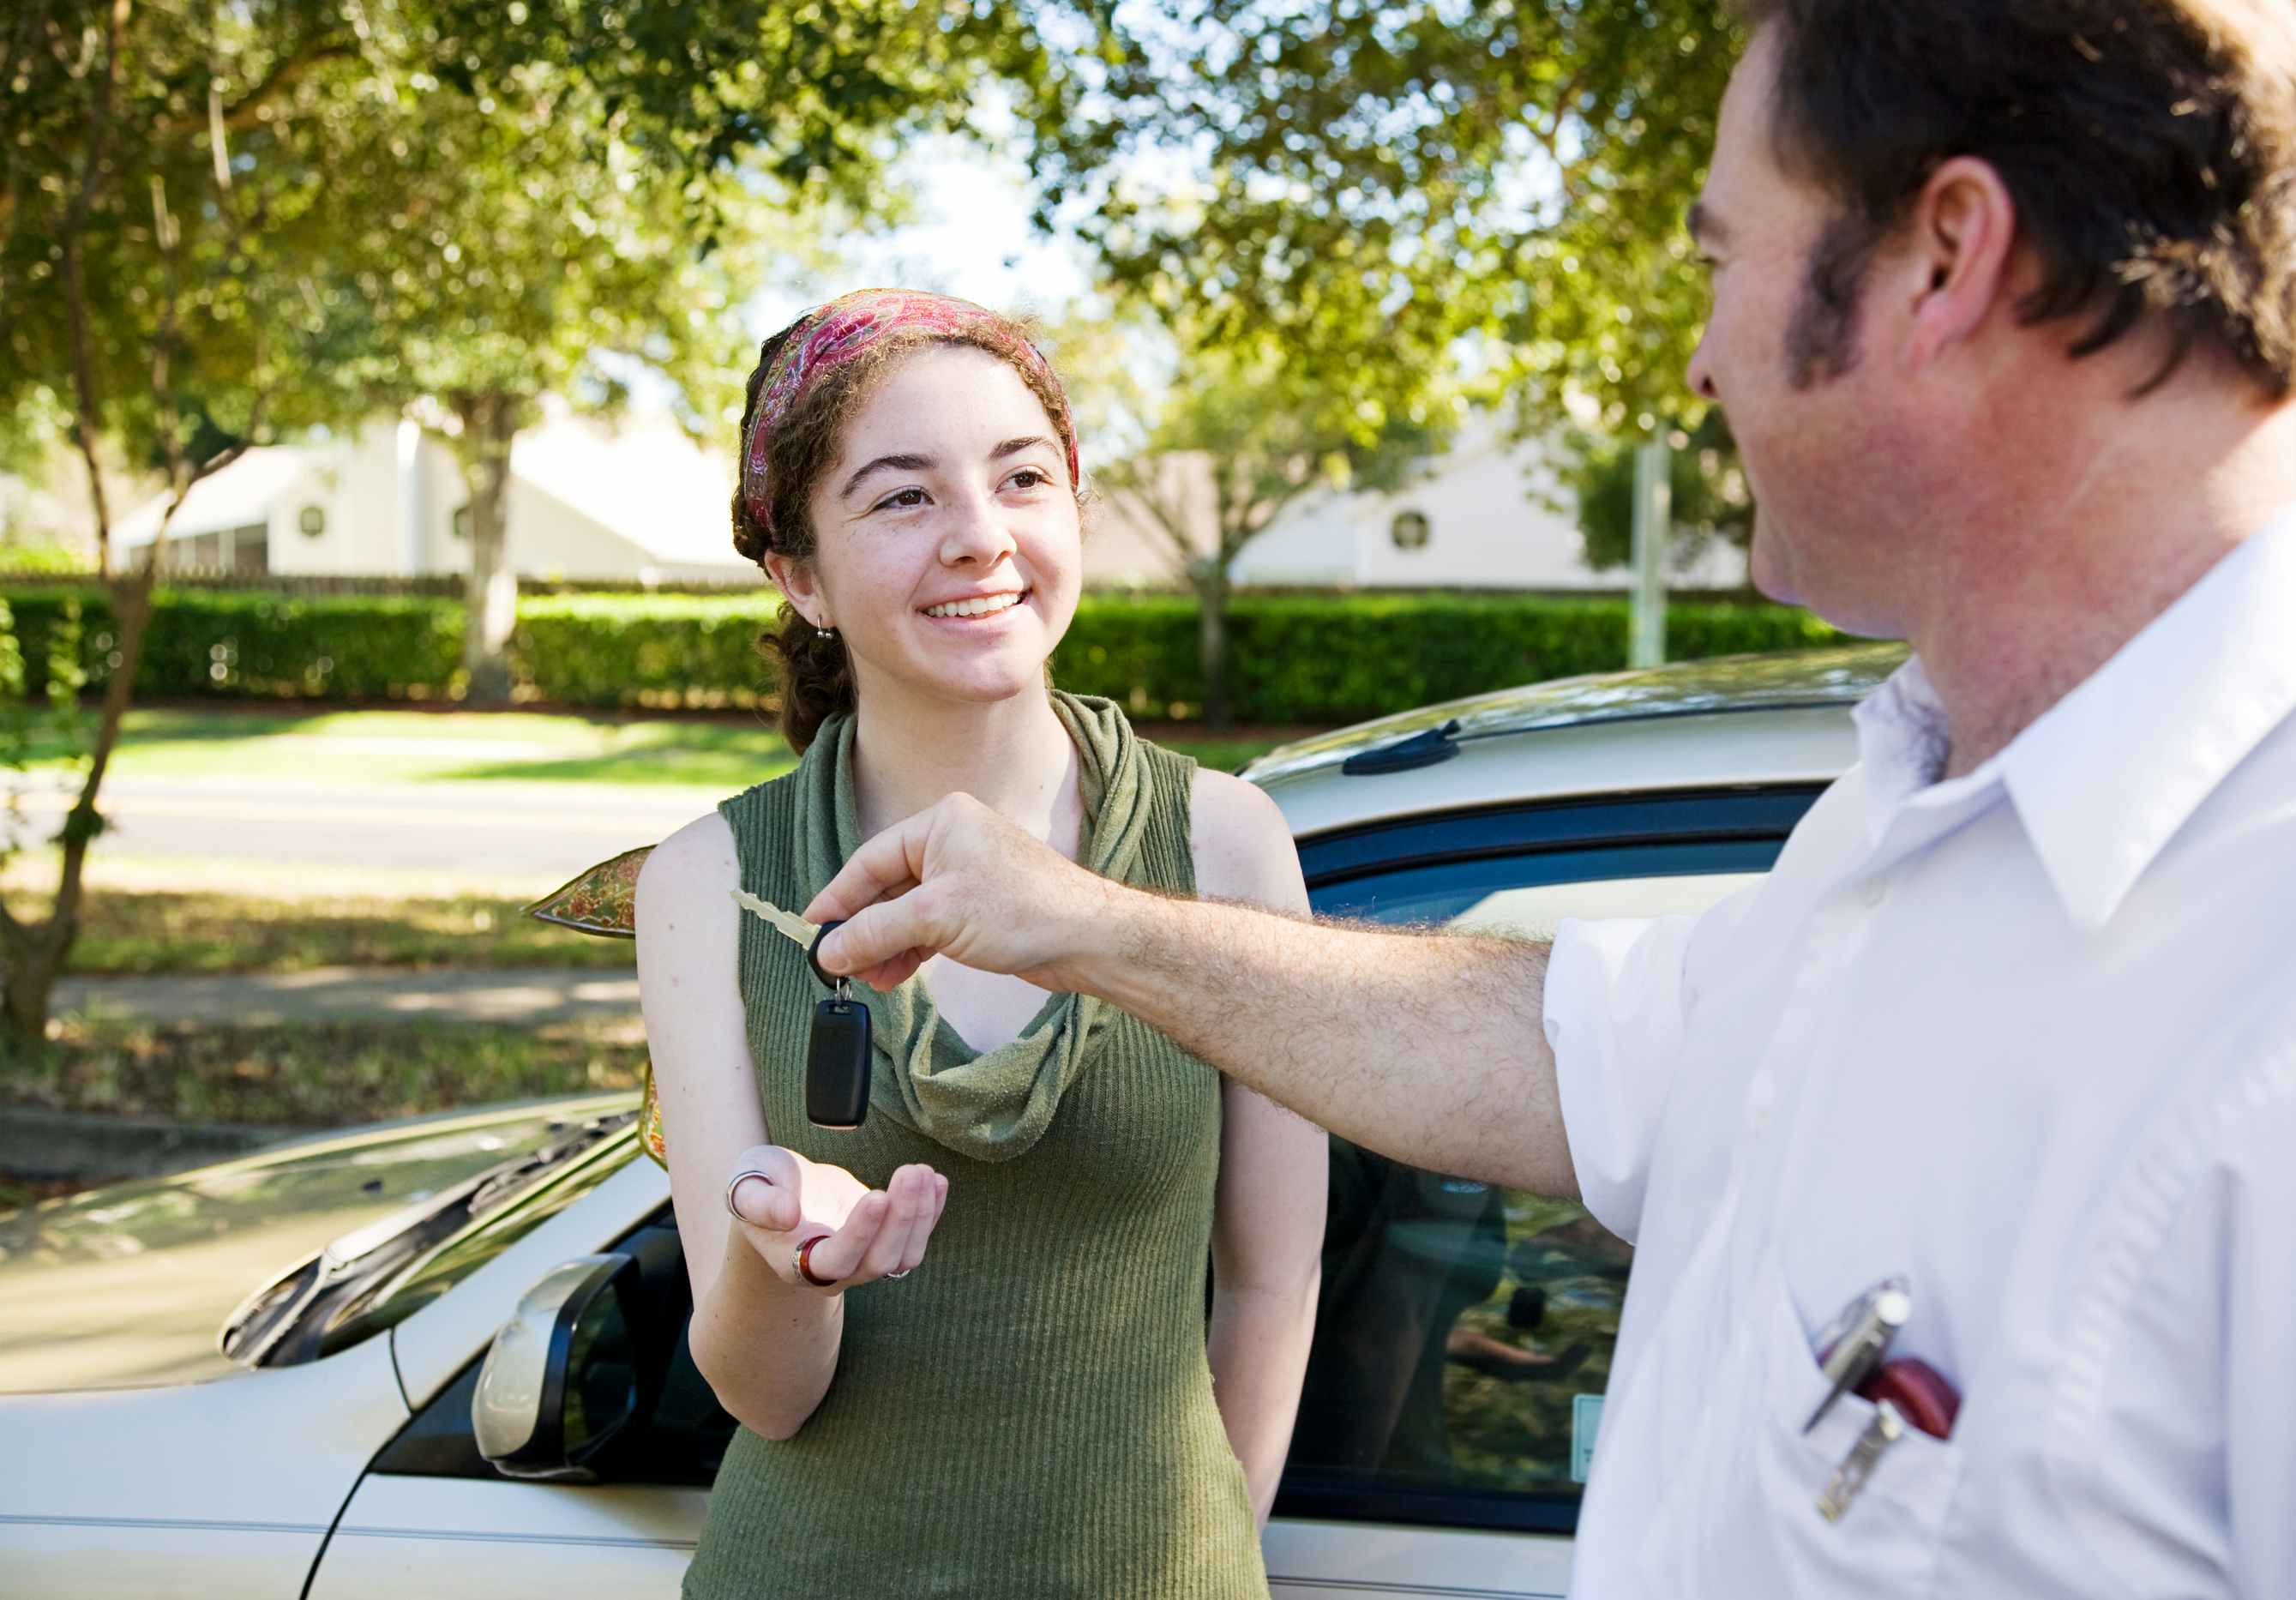 A man handing a teen car keys